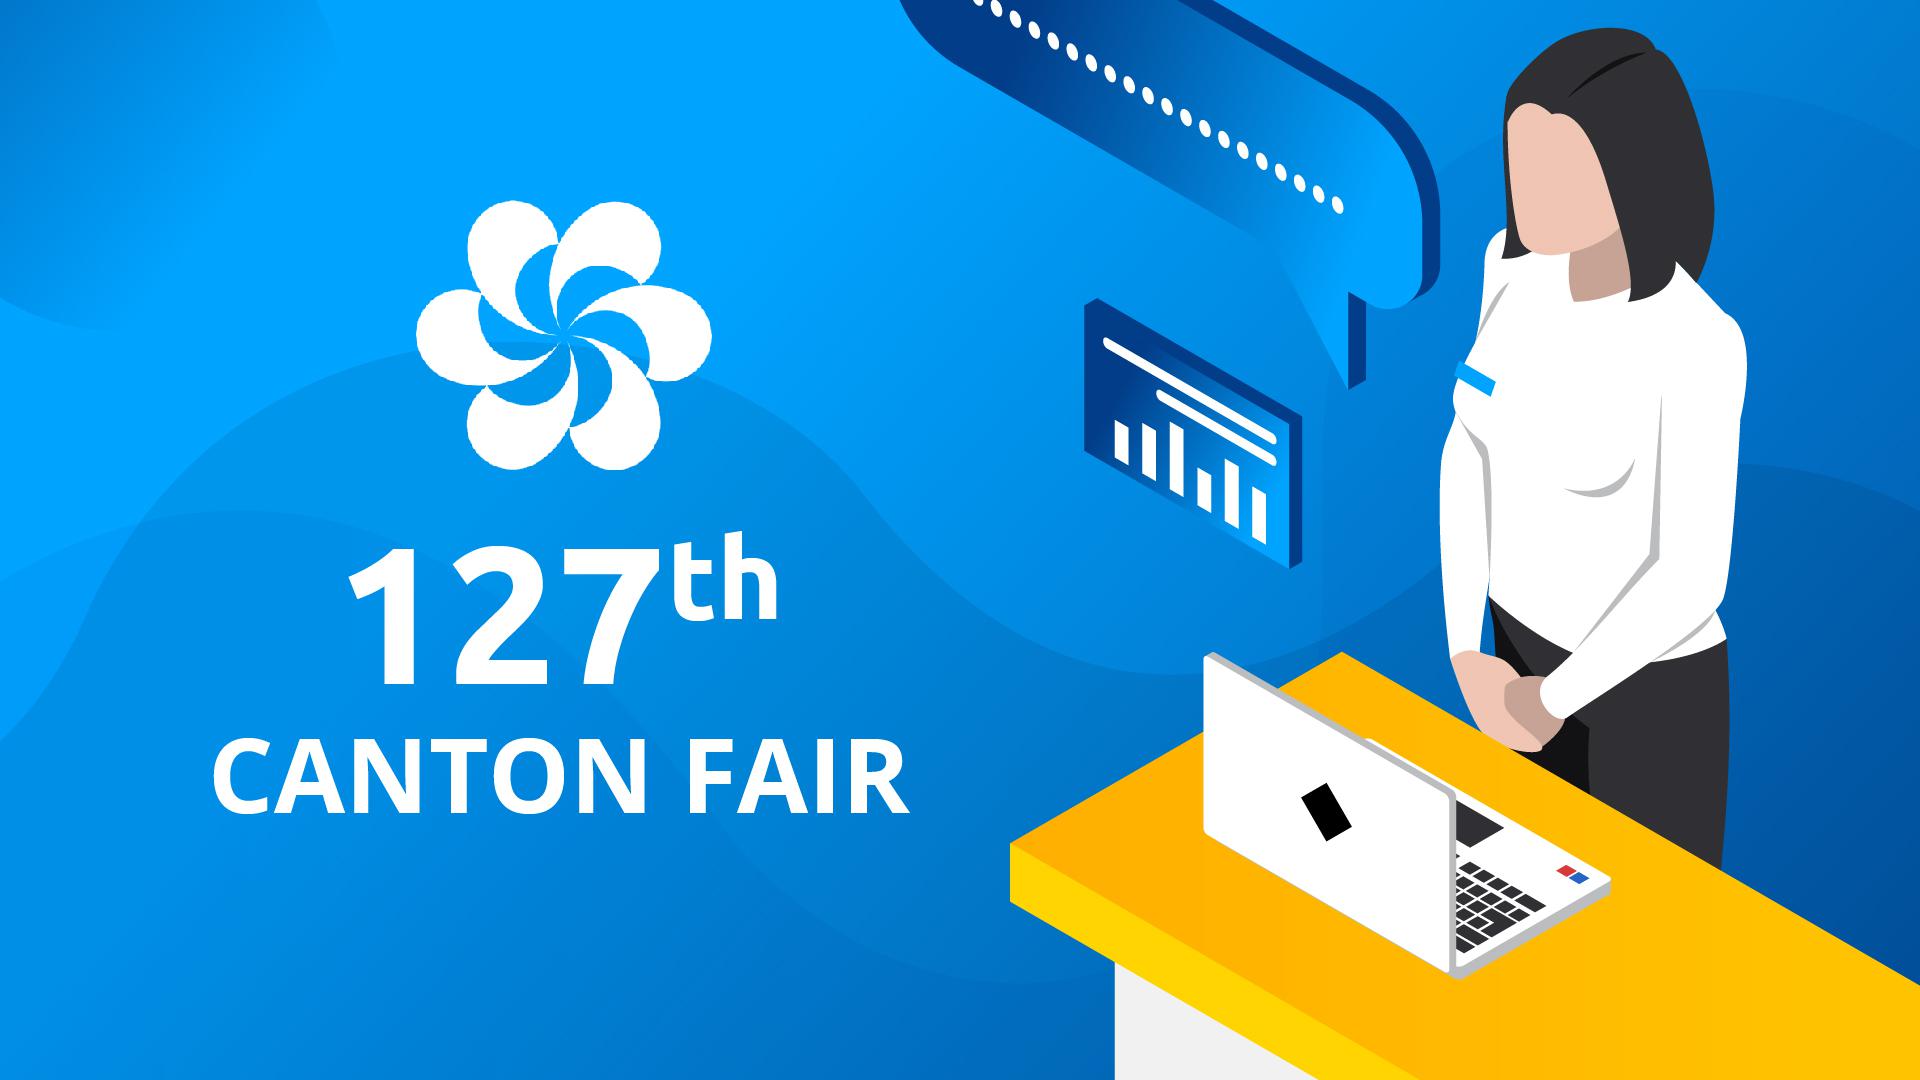 The 127th Canton Fair Online